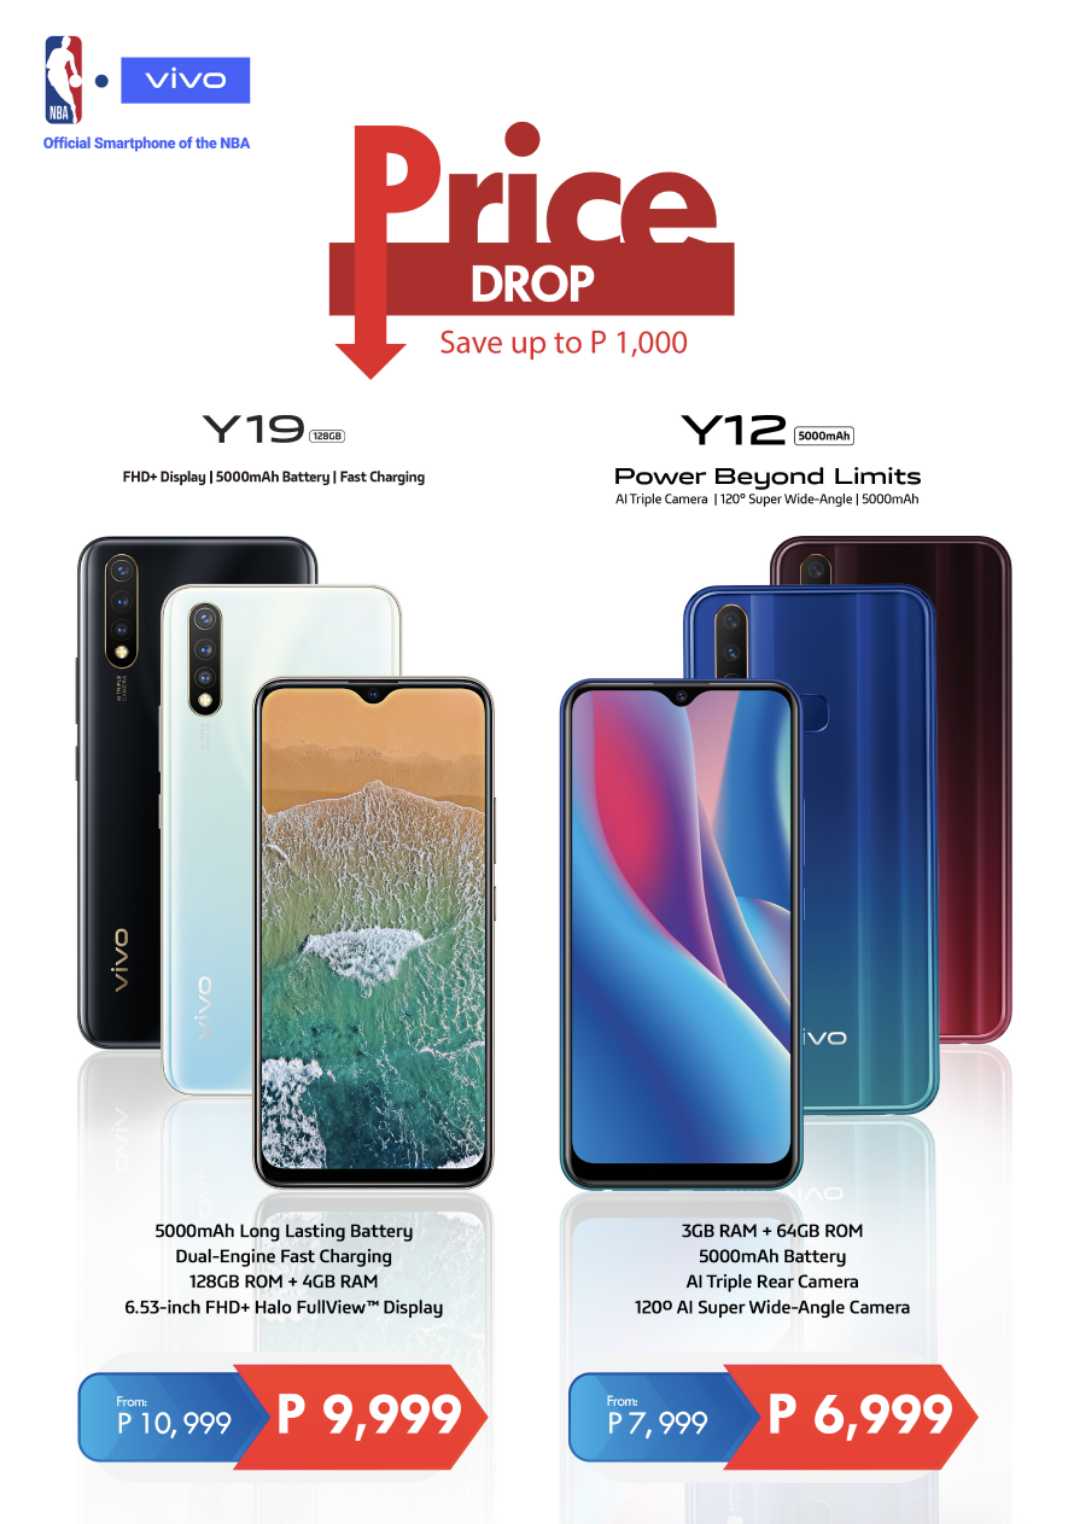 Vivo Announces a Price Drop for its Y19 and Y12 Smartphones